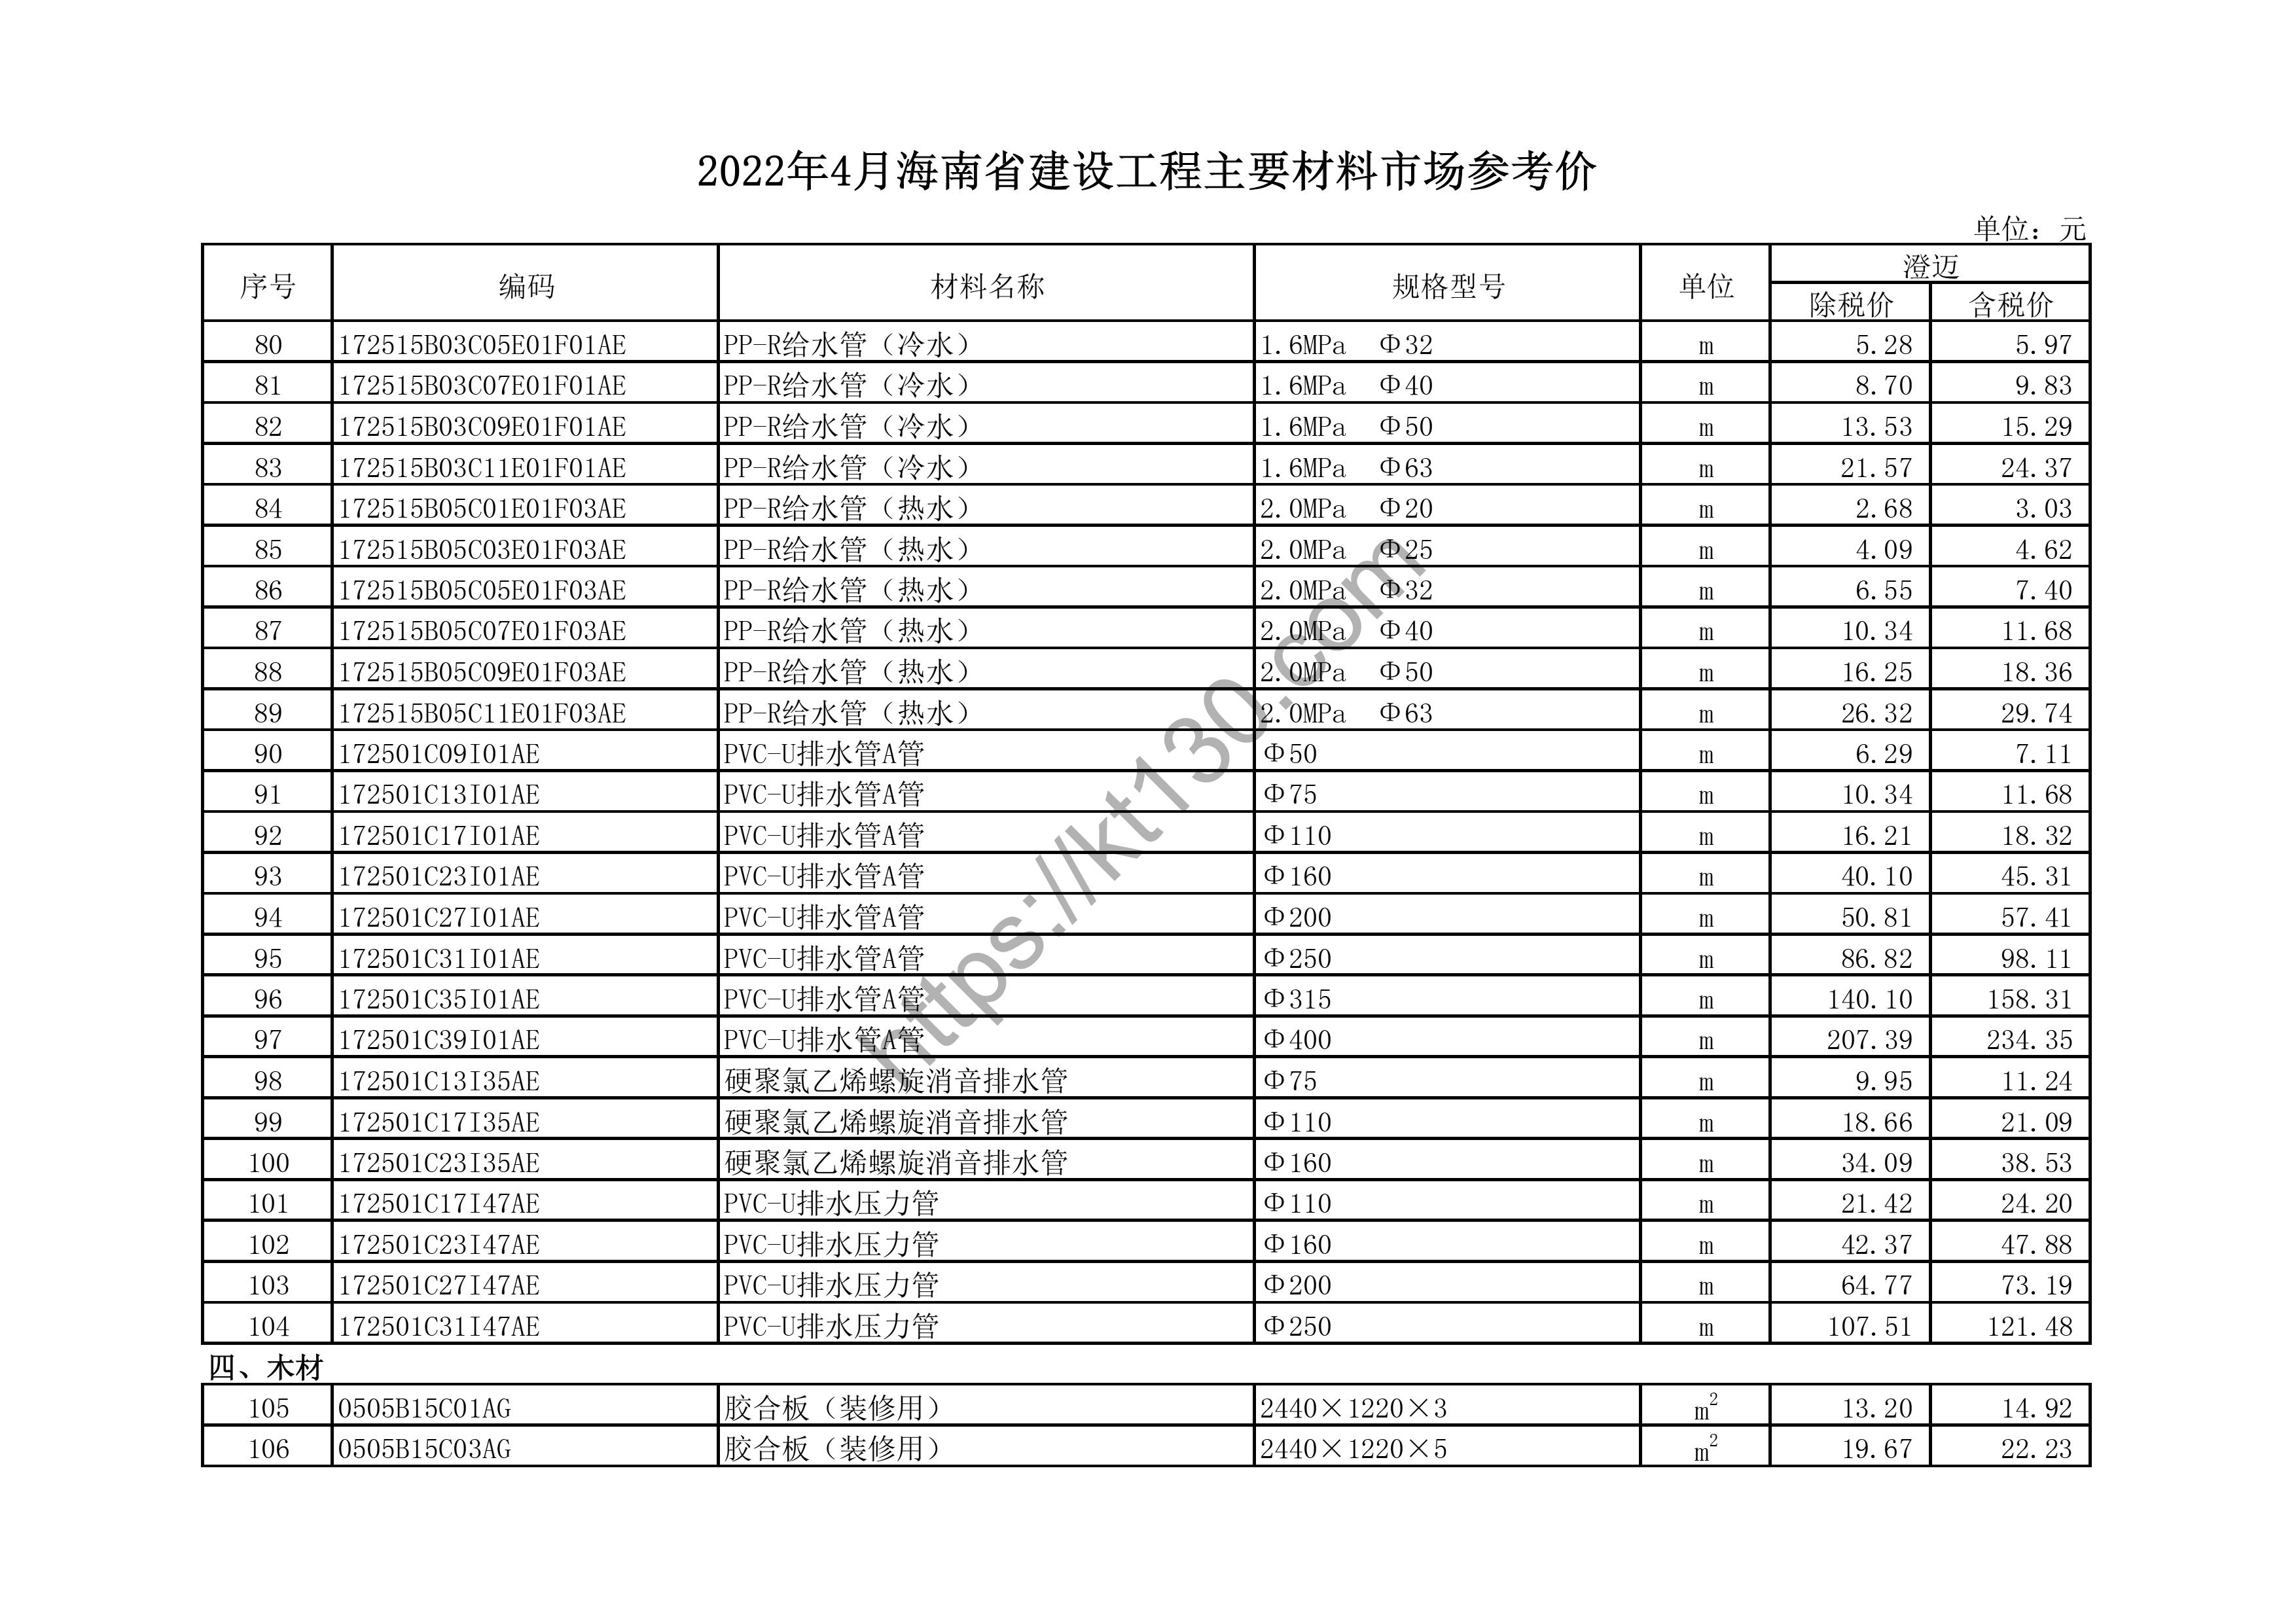 海南省2022年4月建筑材料价_喷涂铝合金窗_44186